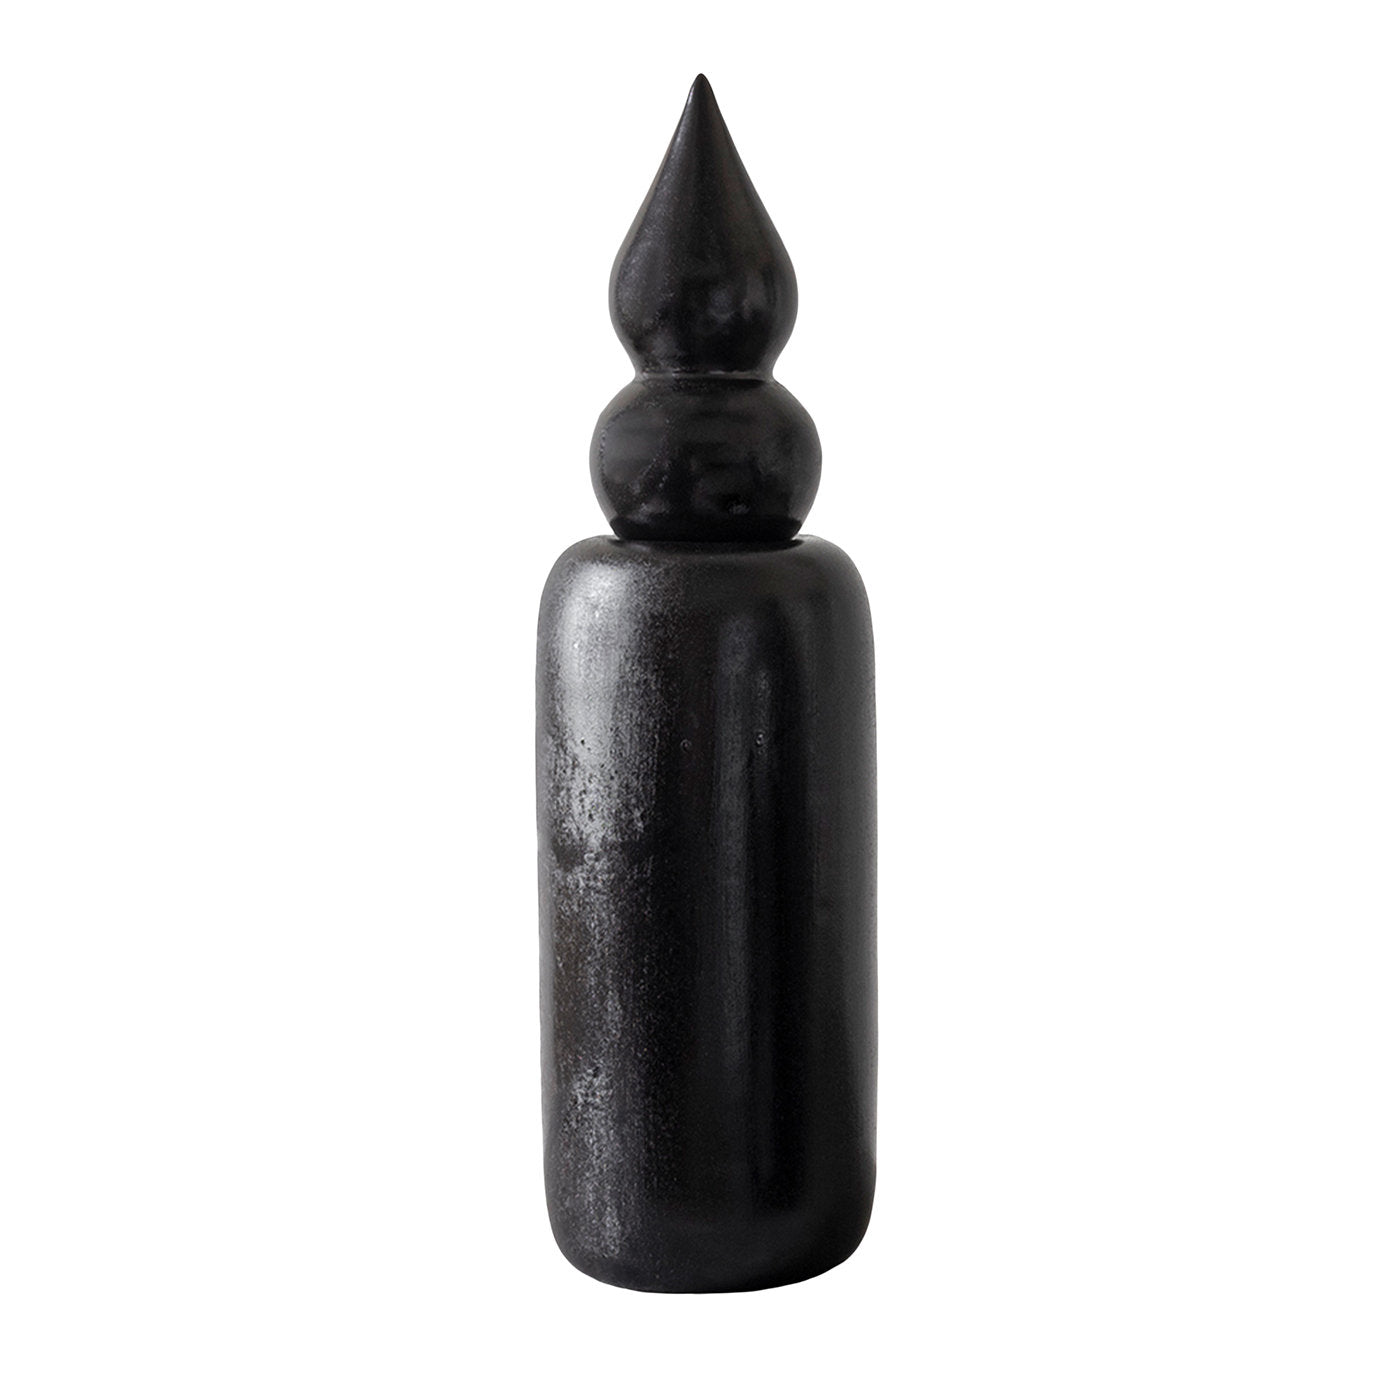 Botanica Schwarze Vase mit Pumo-Aufsatz  - Hauptansicht